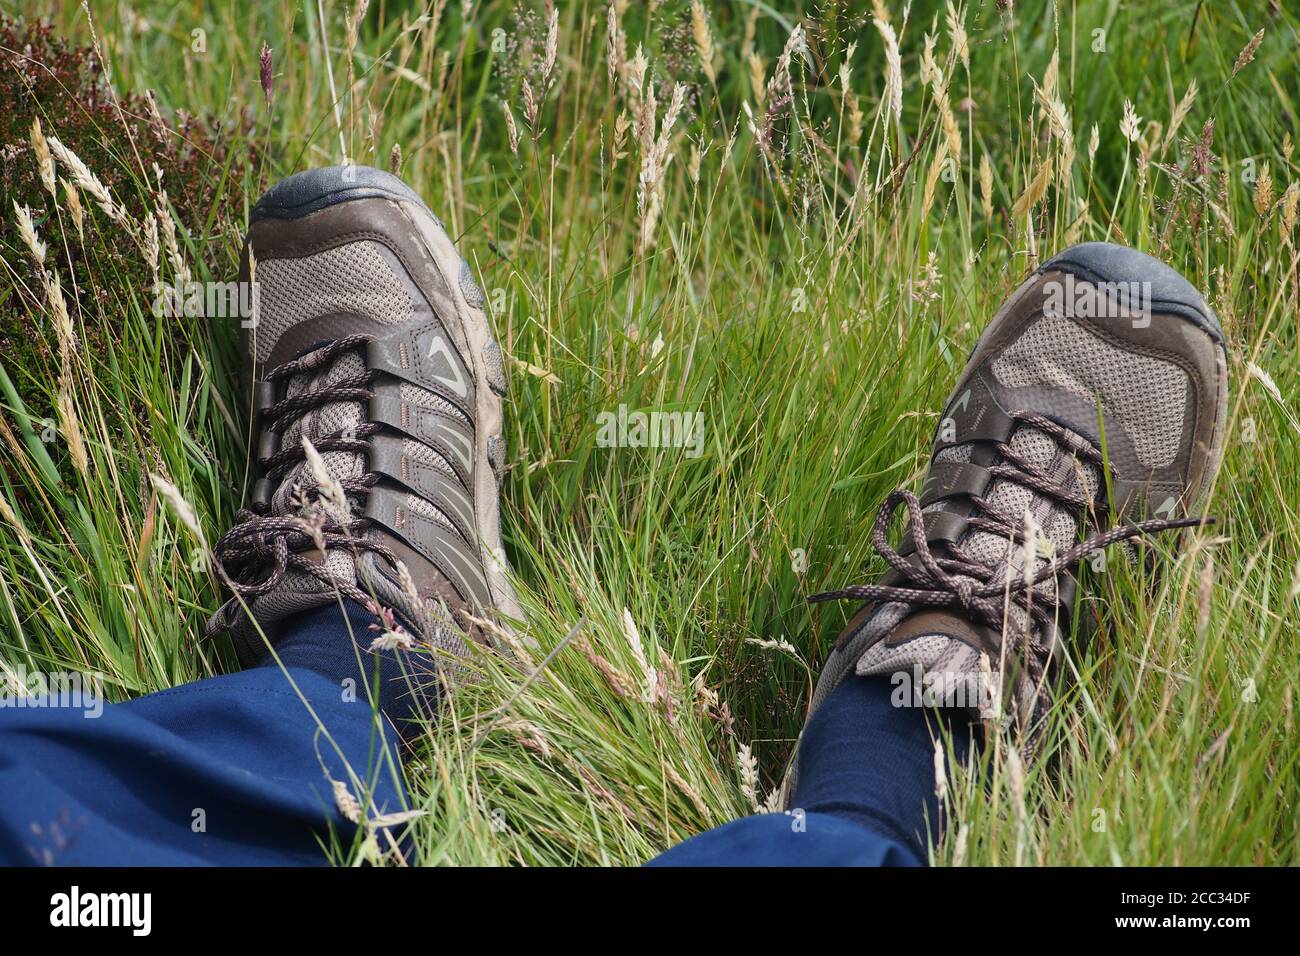 Una vista delle caviglie e dei piedi di un uomo, riposante, adagiato in erba ruvida indossando pantaloni blu, calze blu e scarpe da passeggio Foto Stock